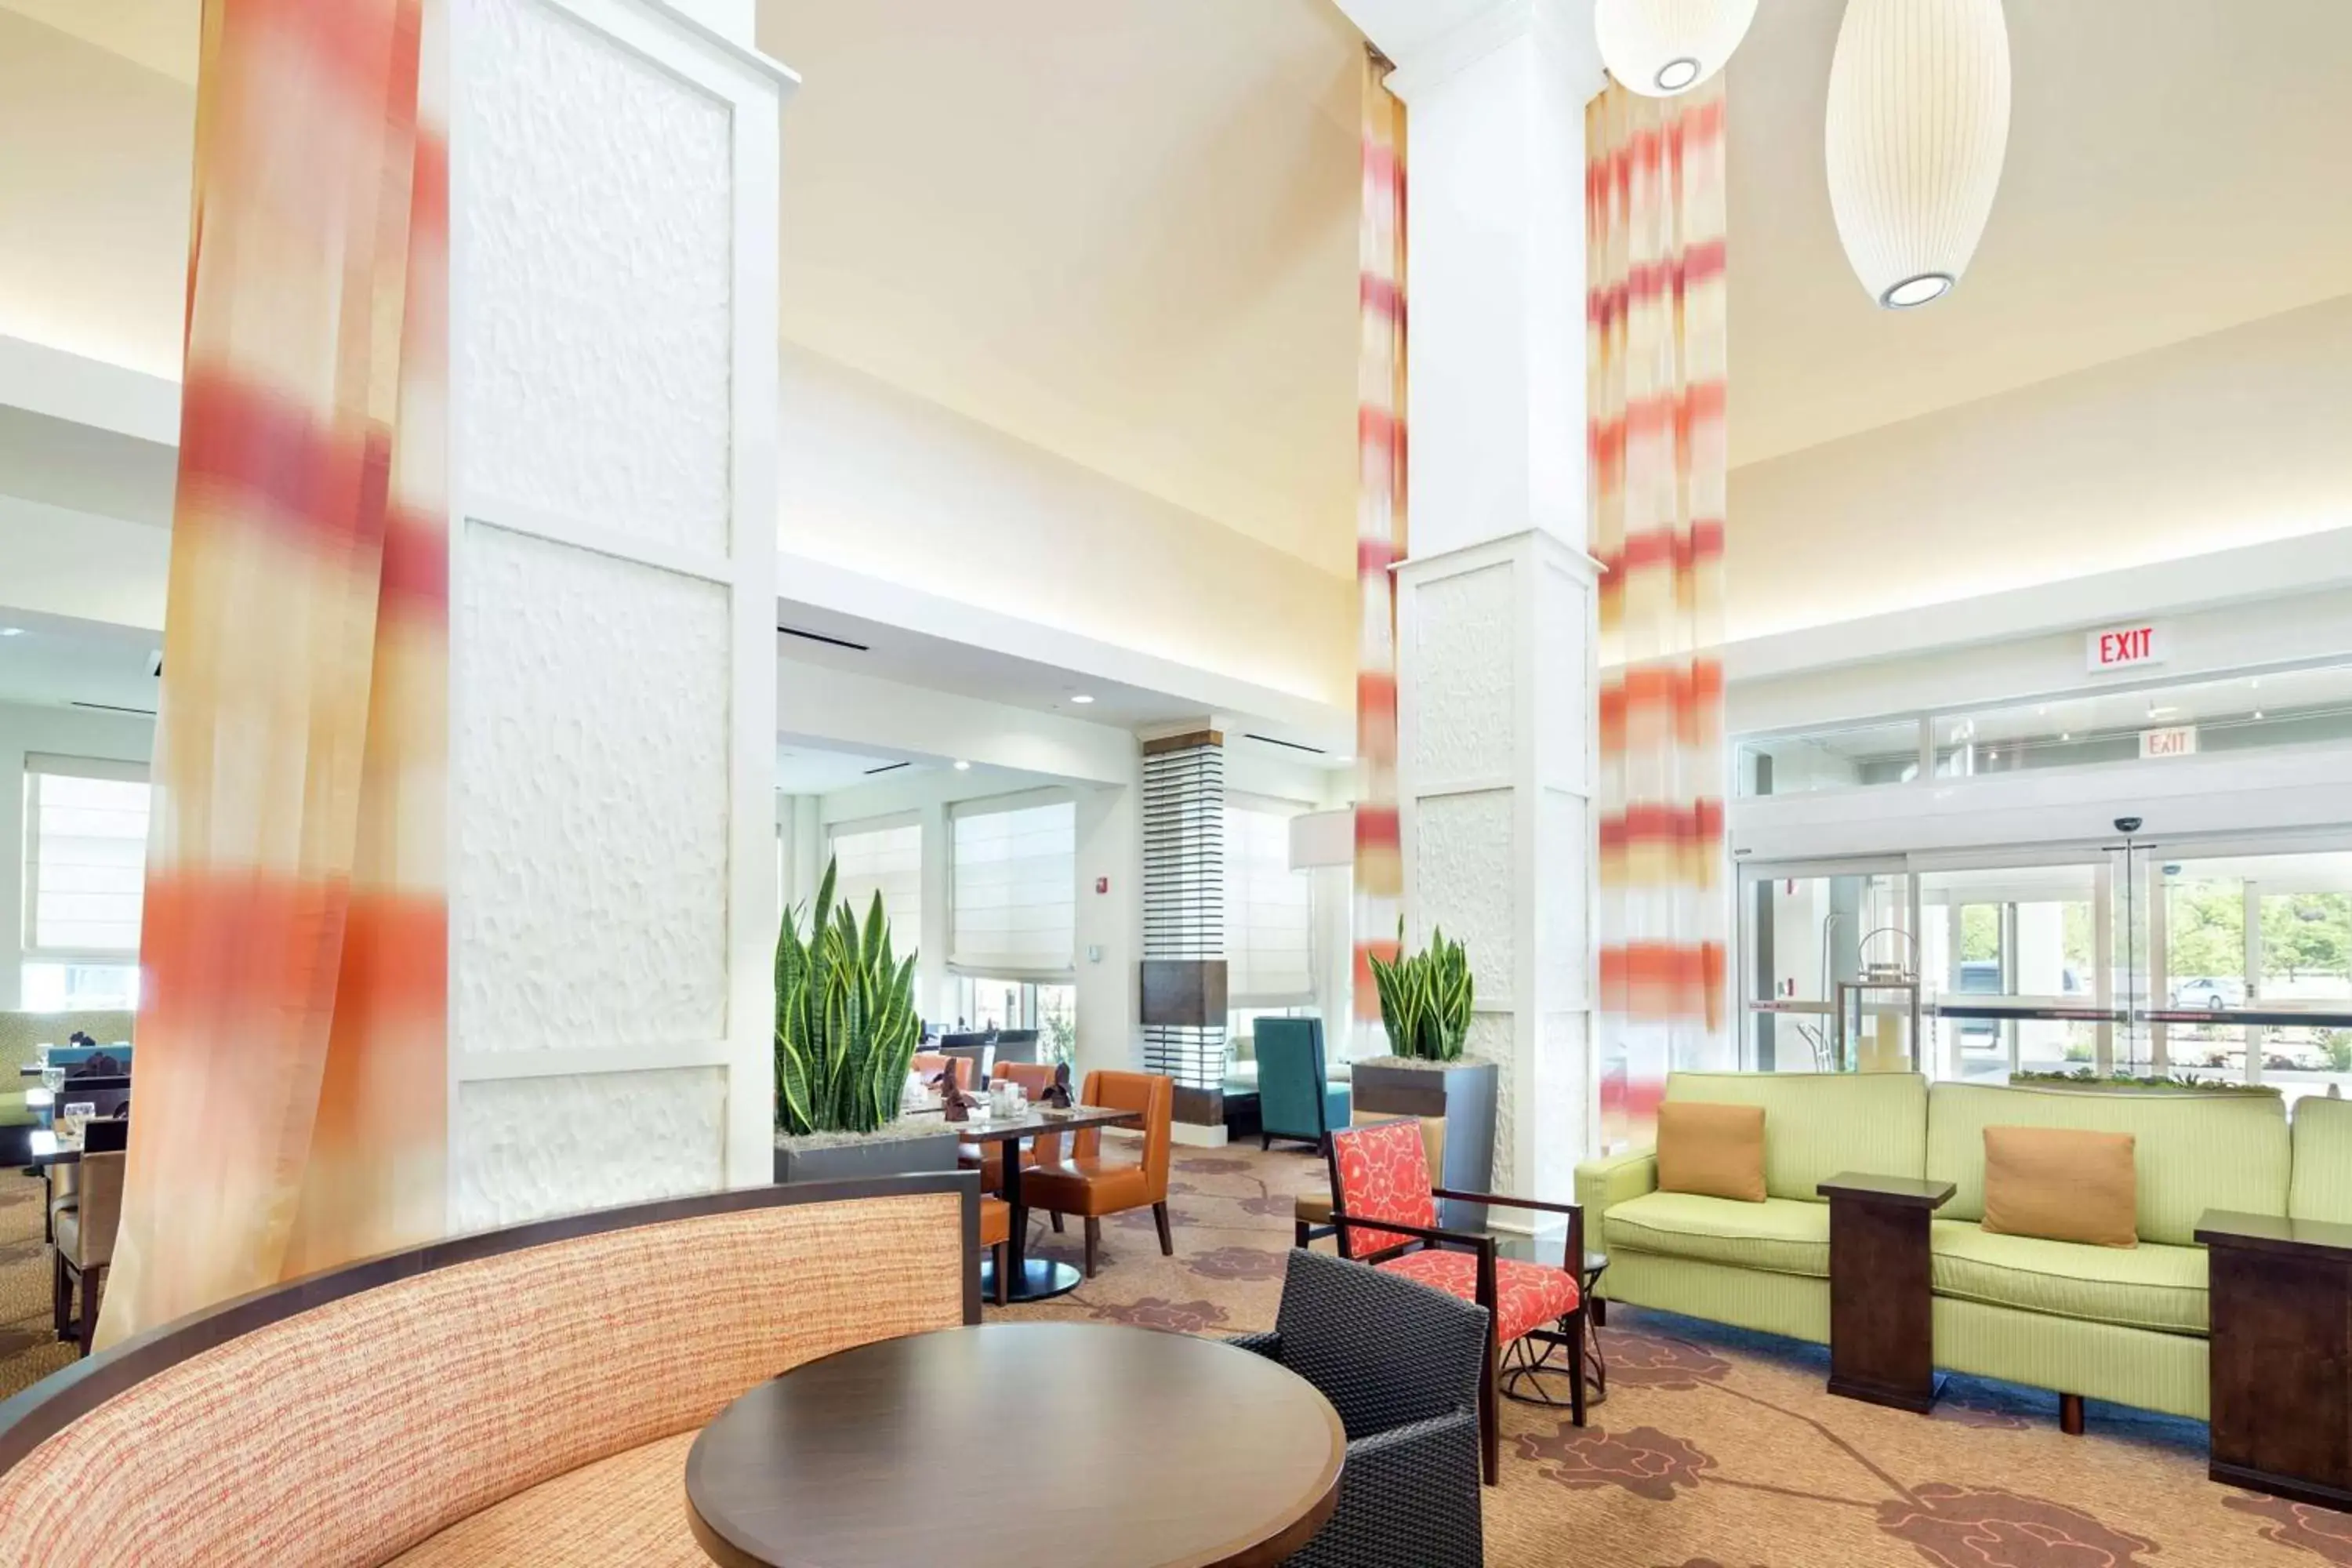 Lobby or reception in Hilton Garden Inn Pascagoula